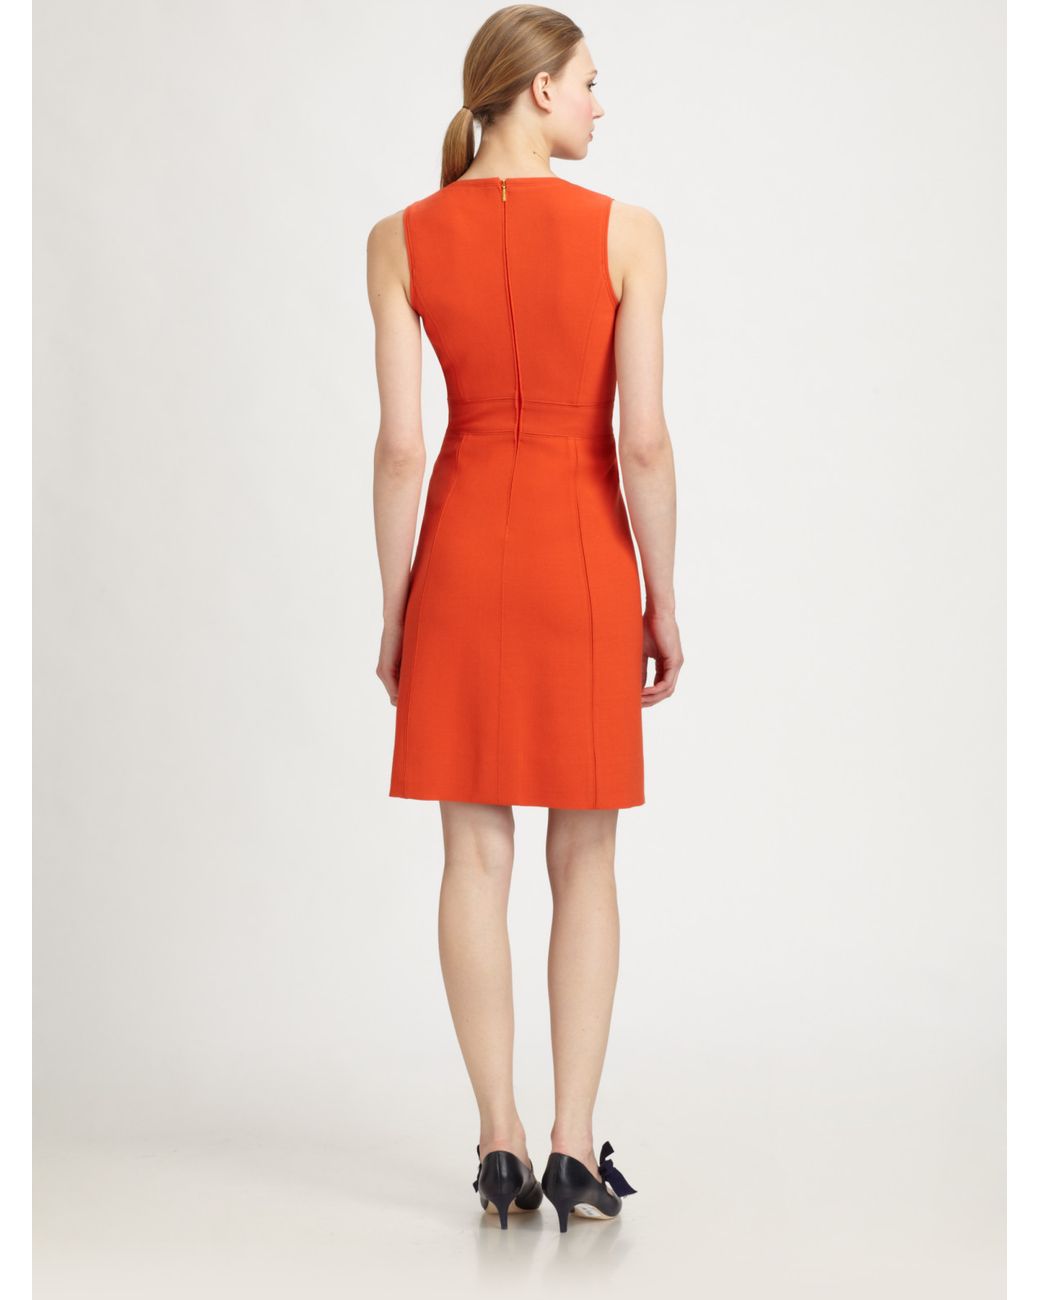 Tory Burch Mariel Sleeveless Dress in Orange | Lyst